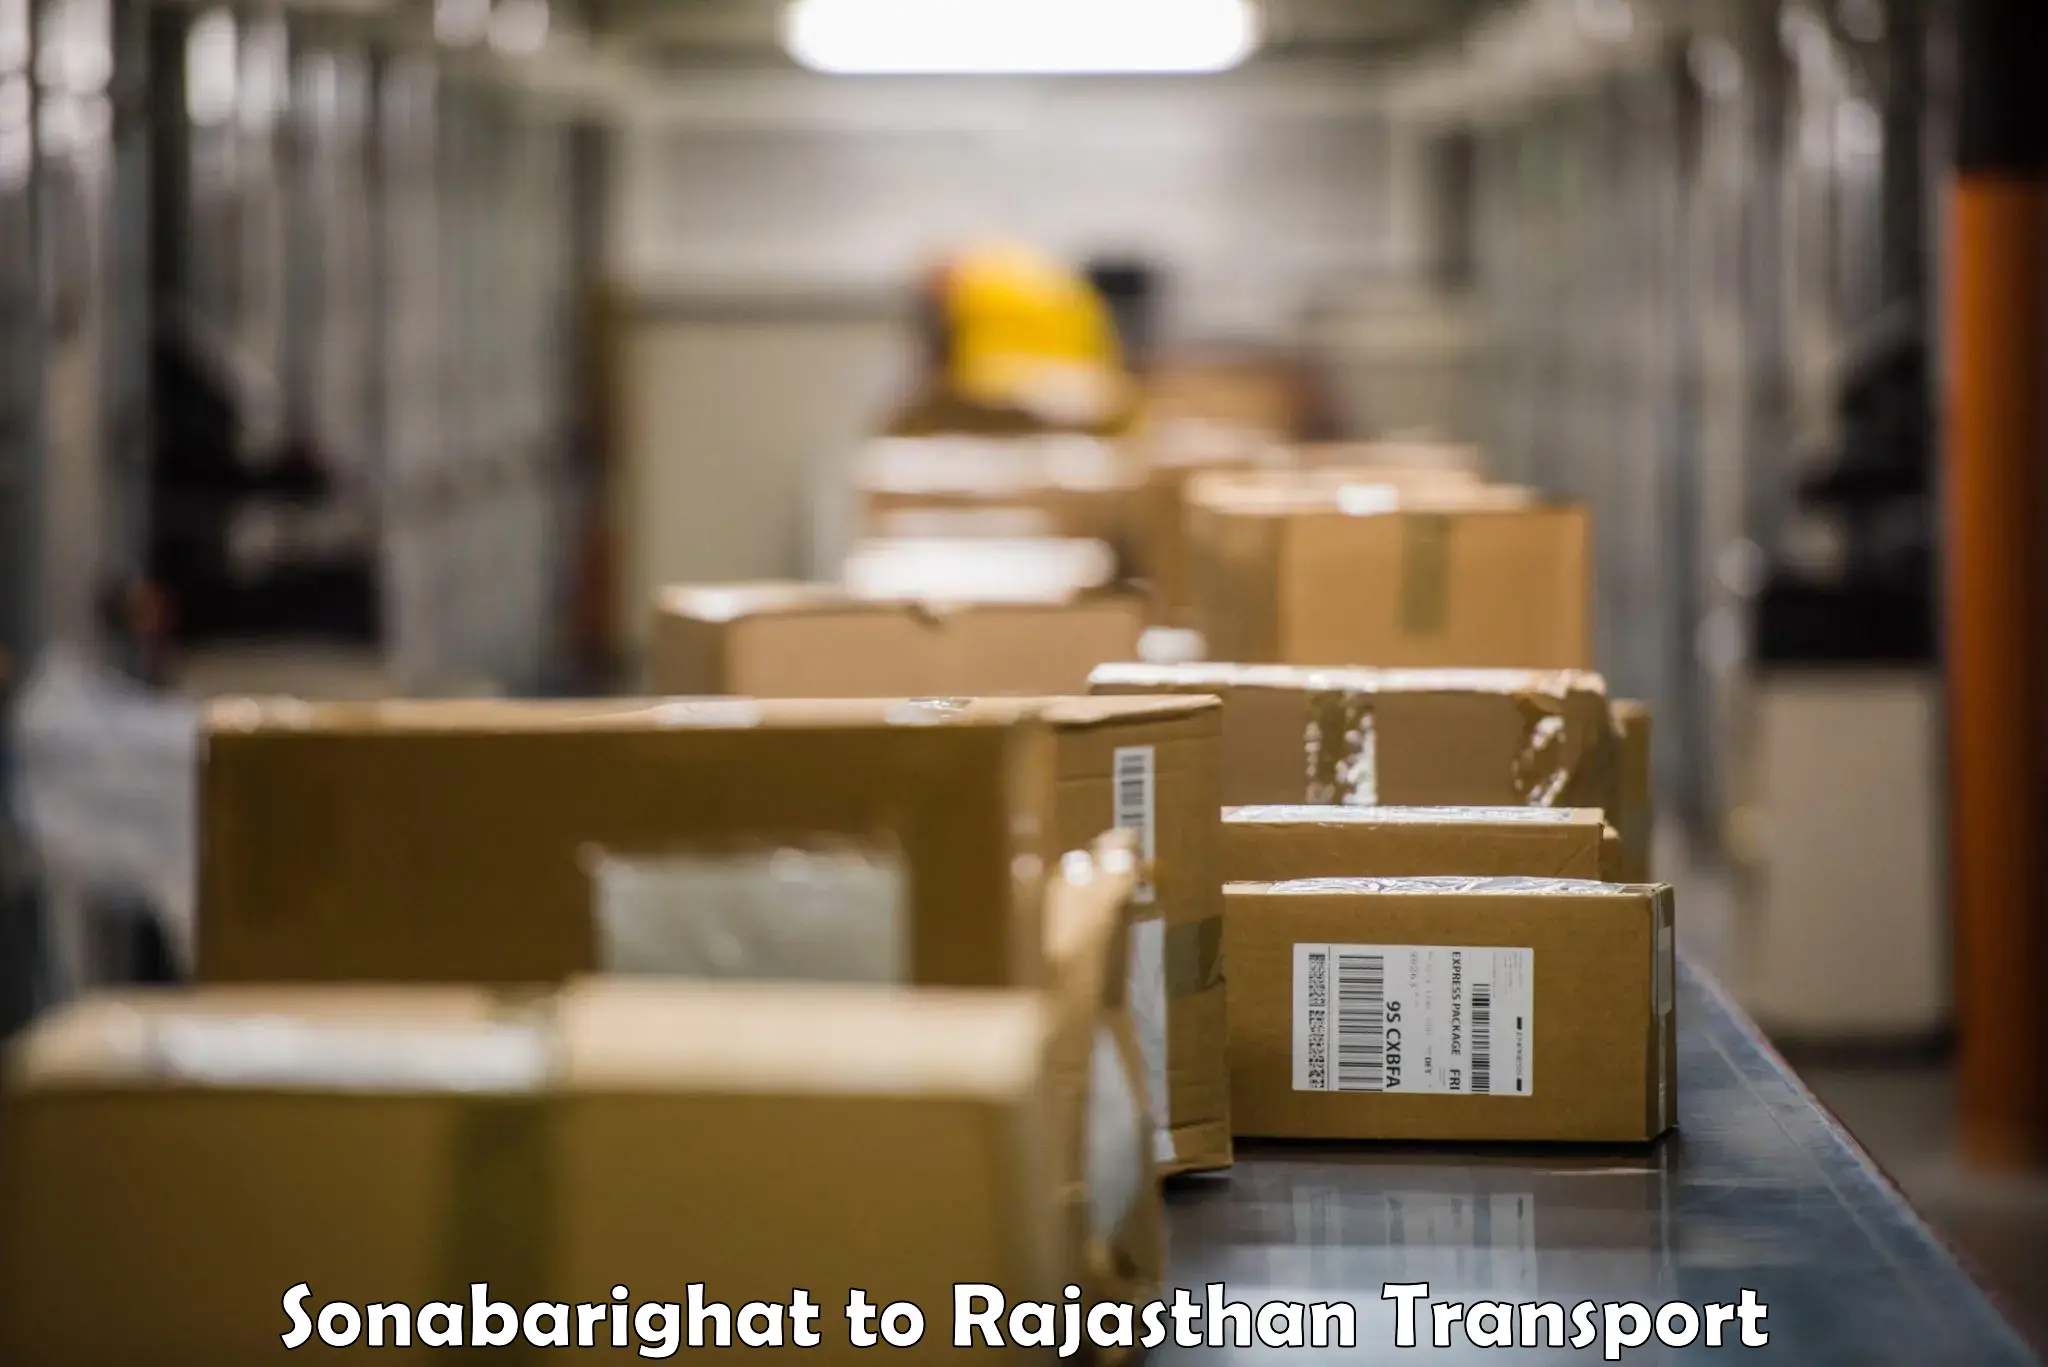 Shipping partner Sonabarighat to Bari Sadri